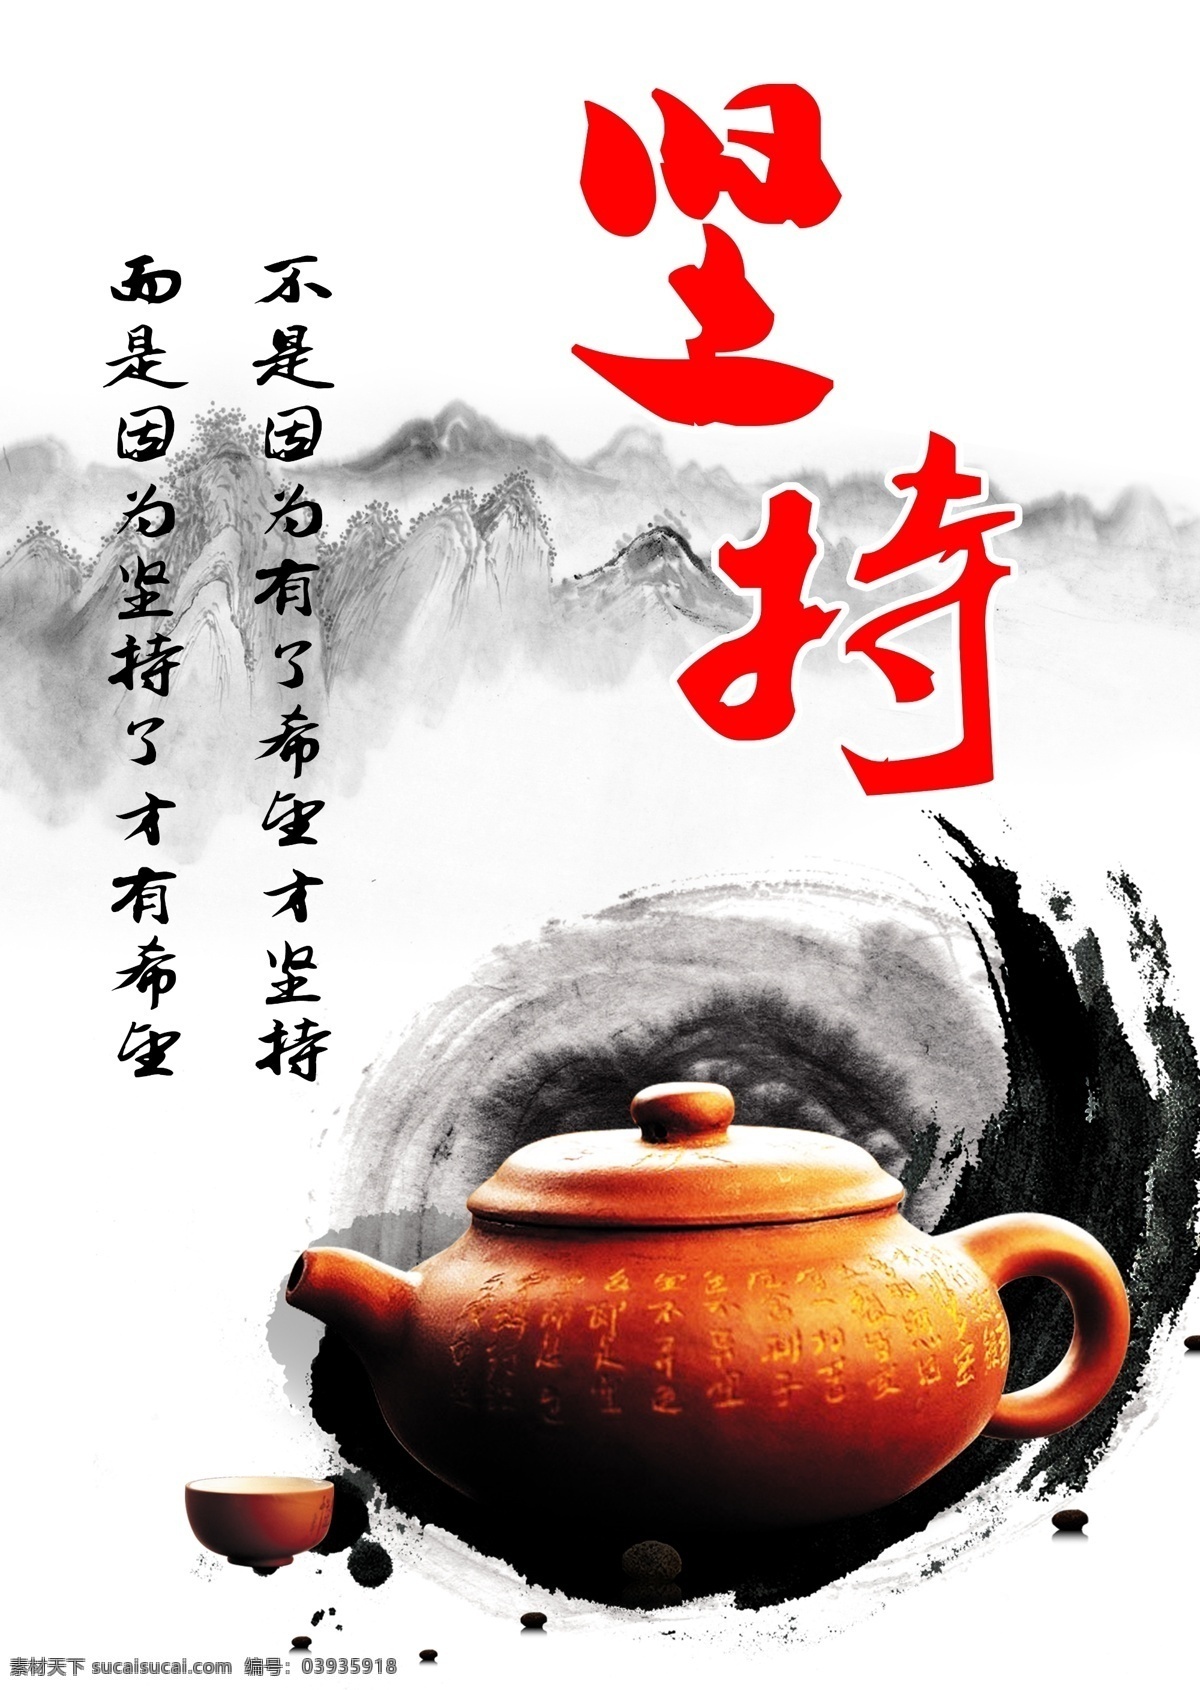 水墨 中国 传统文化 坚持 高清 编辑 中国文化 企业文化 校园文化 励志 努力 水墨画 茶壶